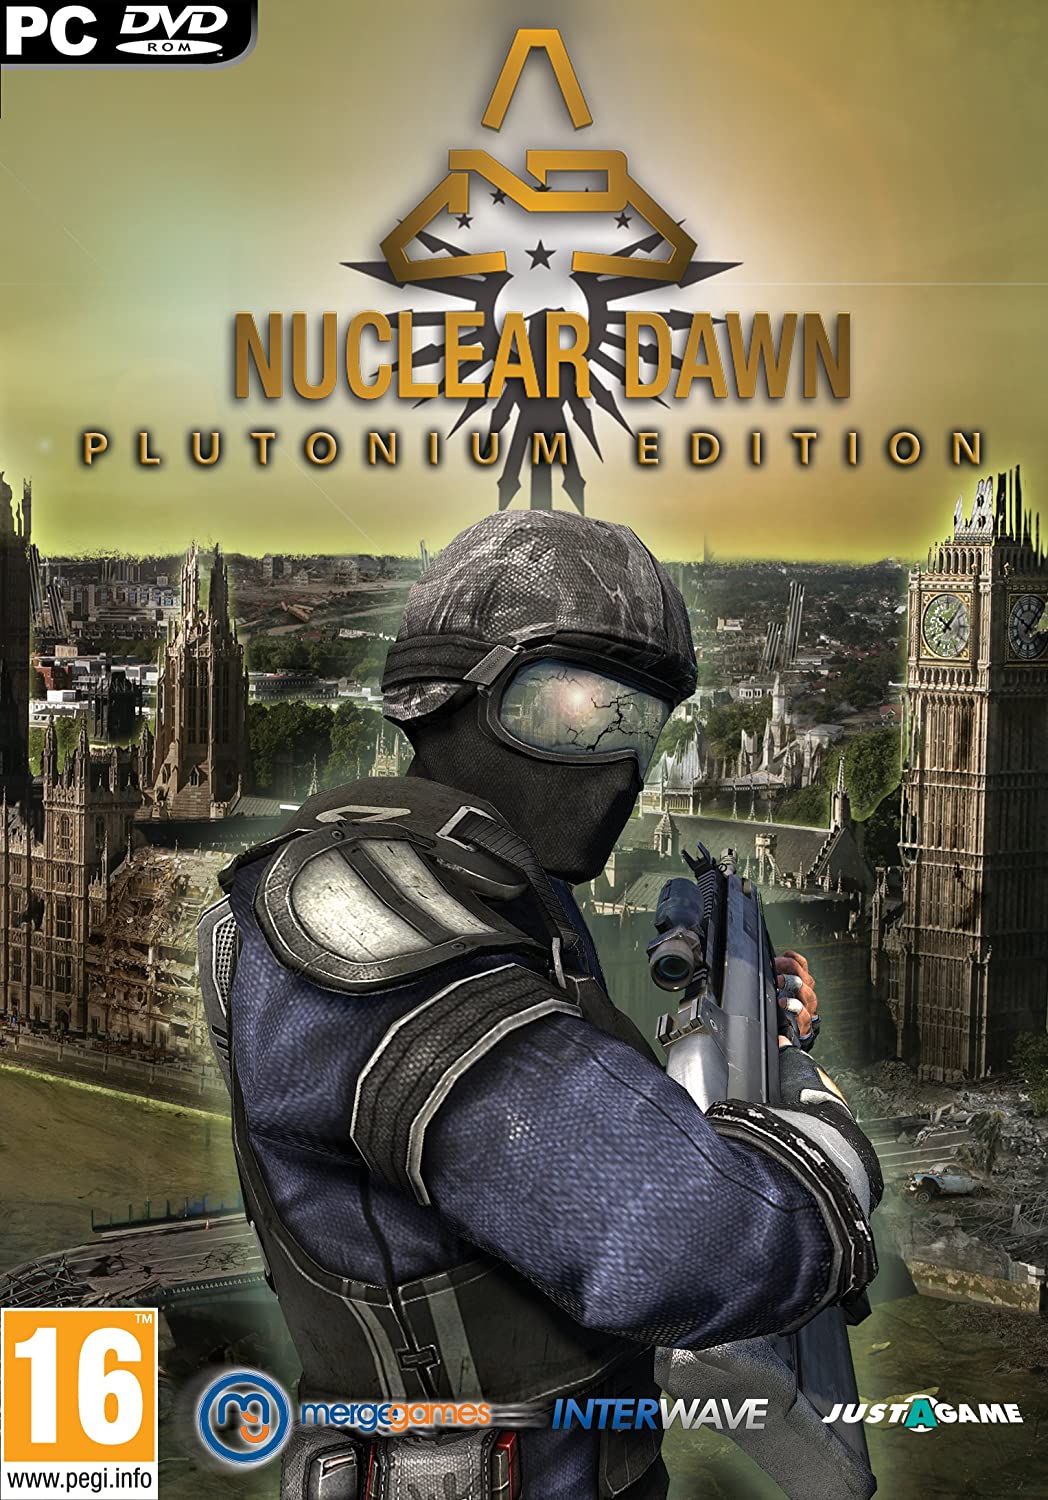 Nuclear Dawn: Plutonium Edition (PC DVD)